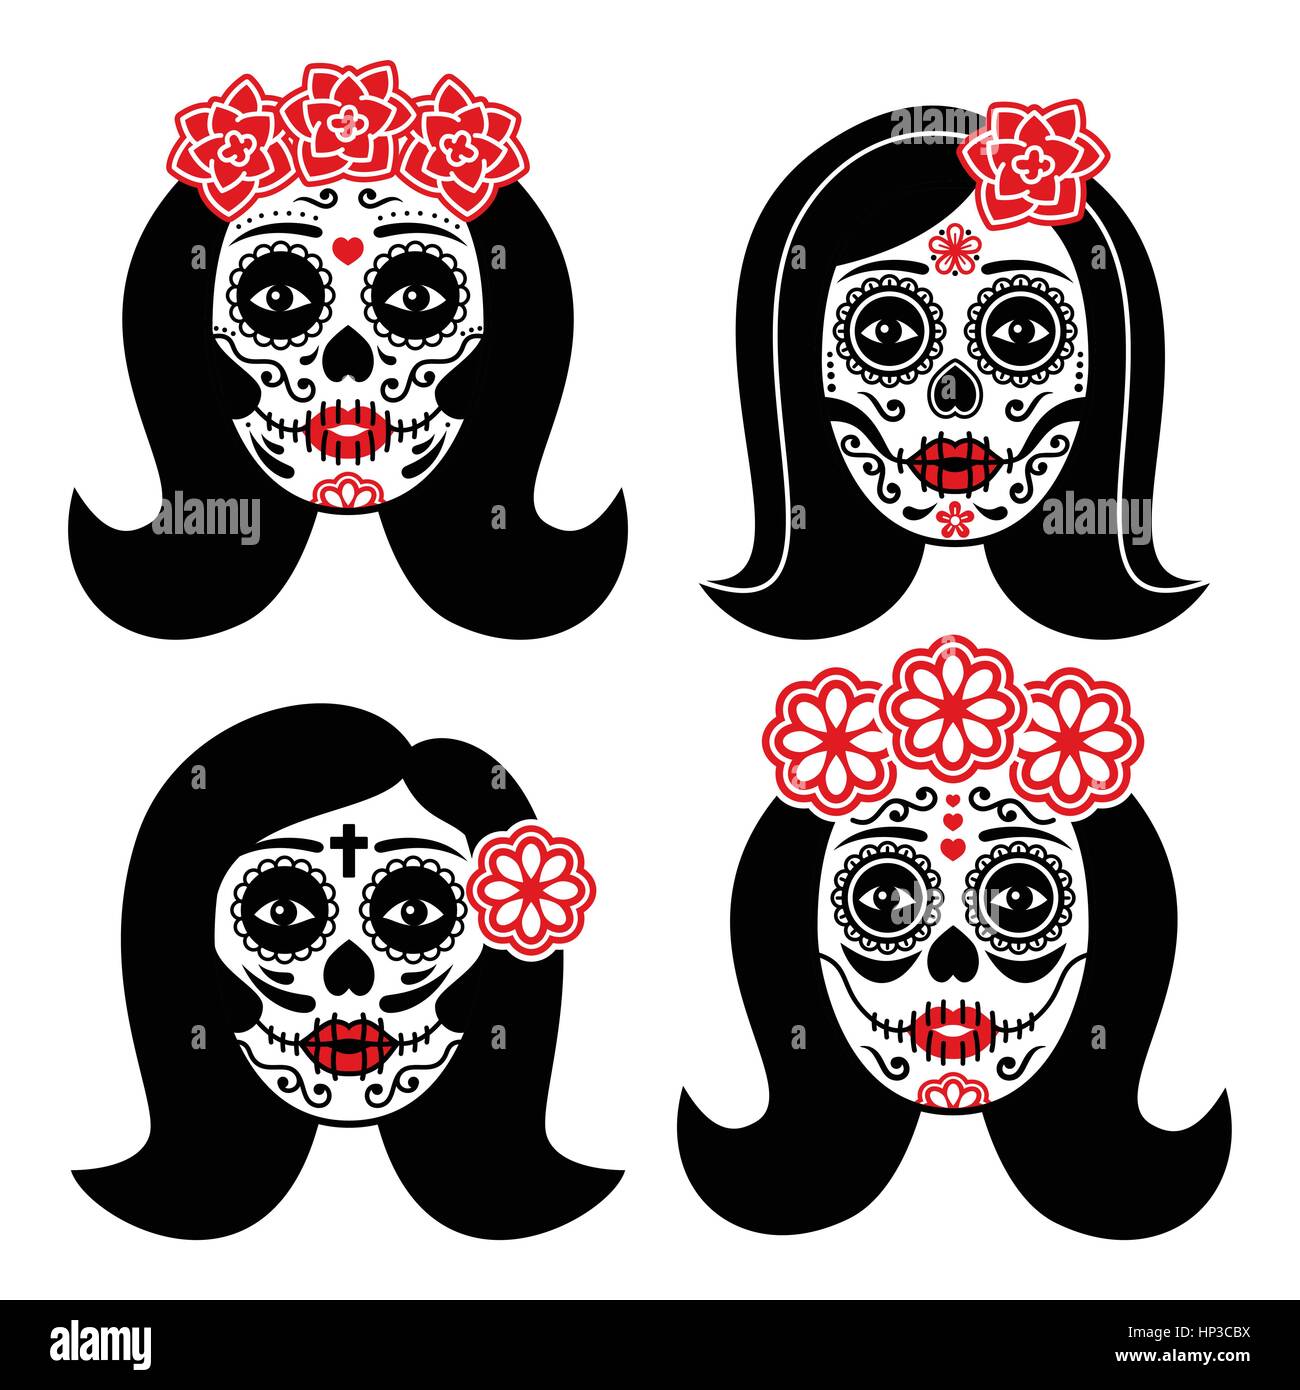 La mexicaine Catrina - Jour de la Dead Girl Description crâne Dia de los Muertos, crâne femme icons set isolated on white Illustration de Vecteur